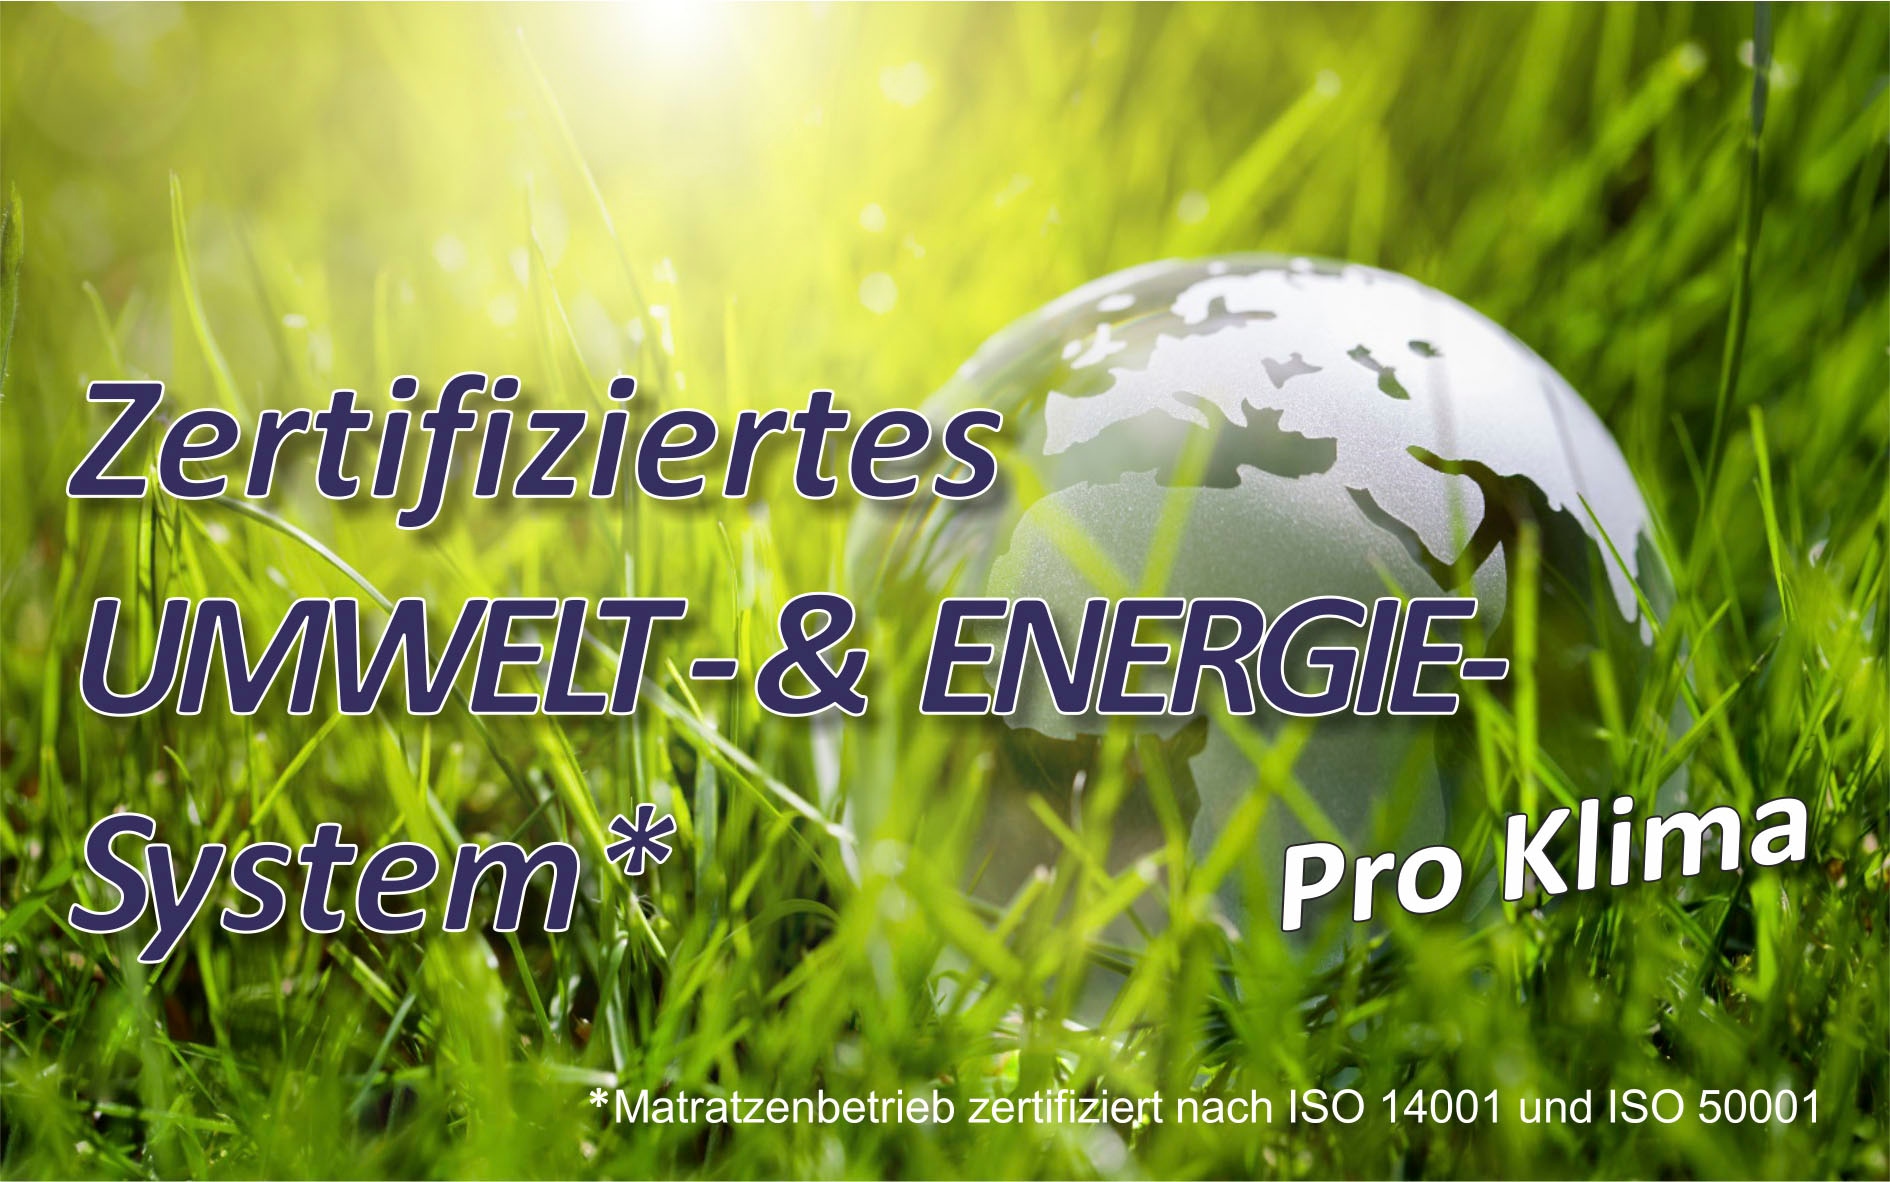 Be Fair Life Lattenrost »Planet 42 KF«, Öko-Tipp Lattenrost aus Deutschland, BLAUER ENGEL zertifiziert